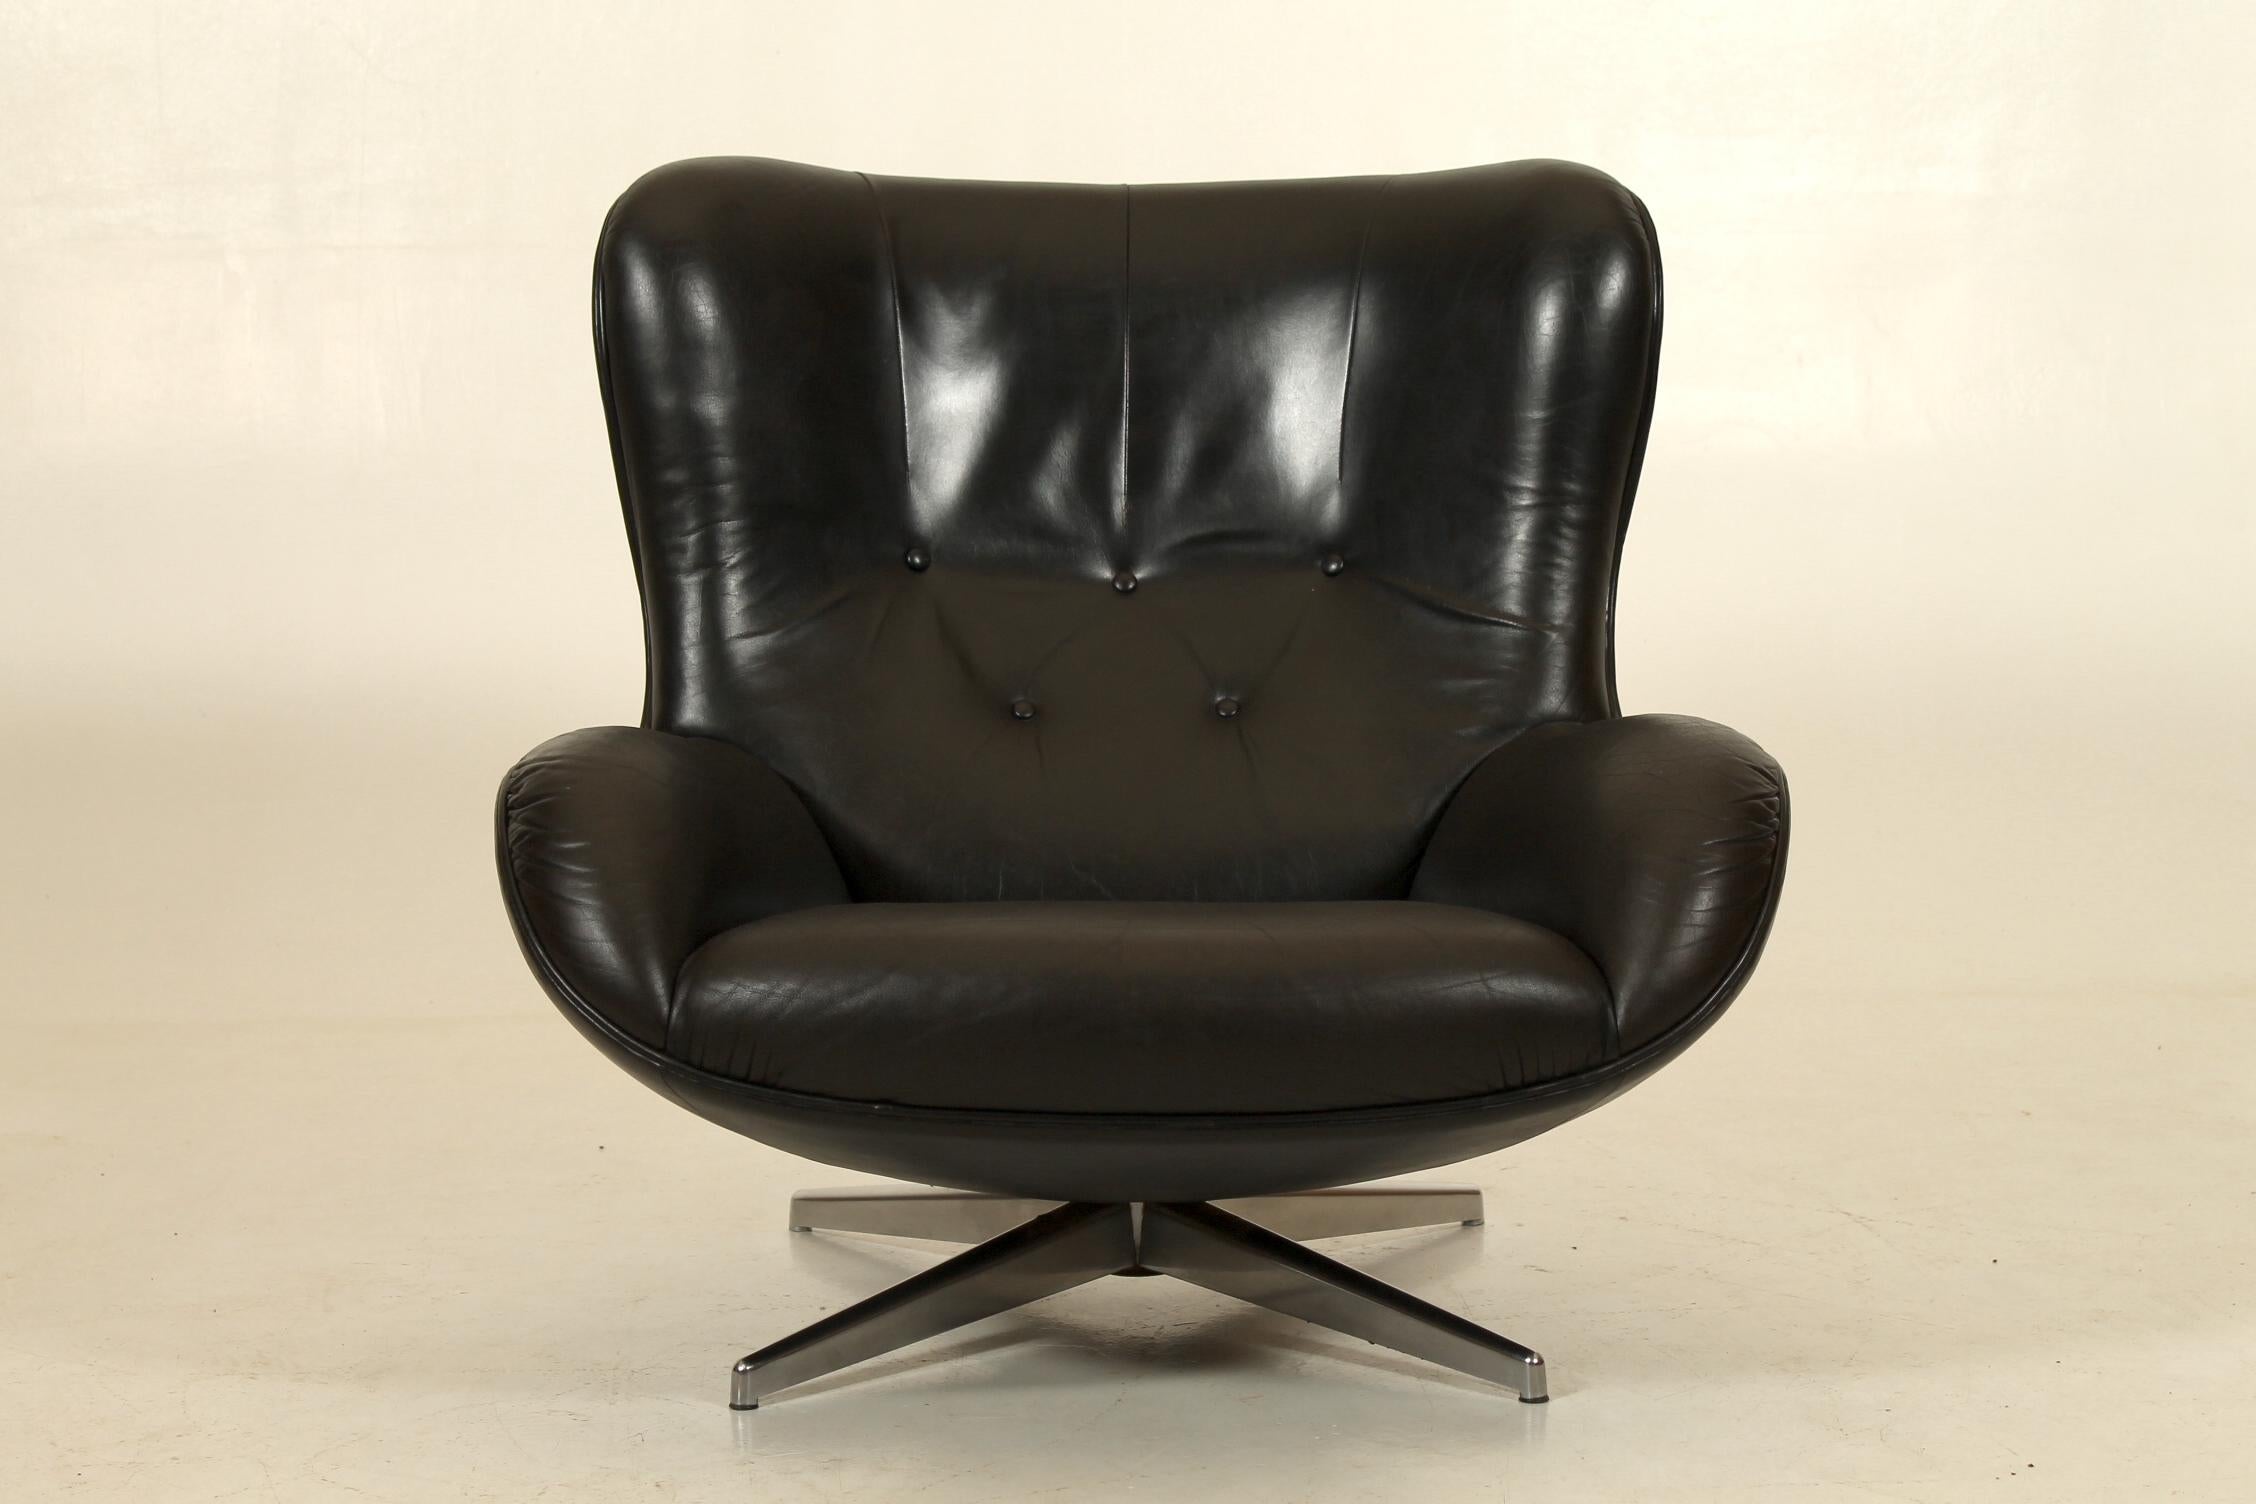 Organisch geformter Sessel aus patiniertem schwarzem Leder mit einem schönen Kontrast der Materialien Leder und Stahl. Entworfen in den frühen 1960er Jahren von Illum Wikkelsø. Hergestellt von A. Mikael Laursen, Dänemark. 
Loungedrehsessel Modell